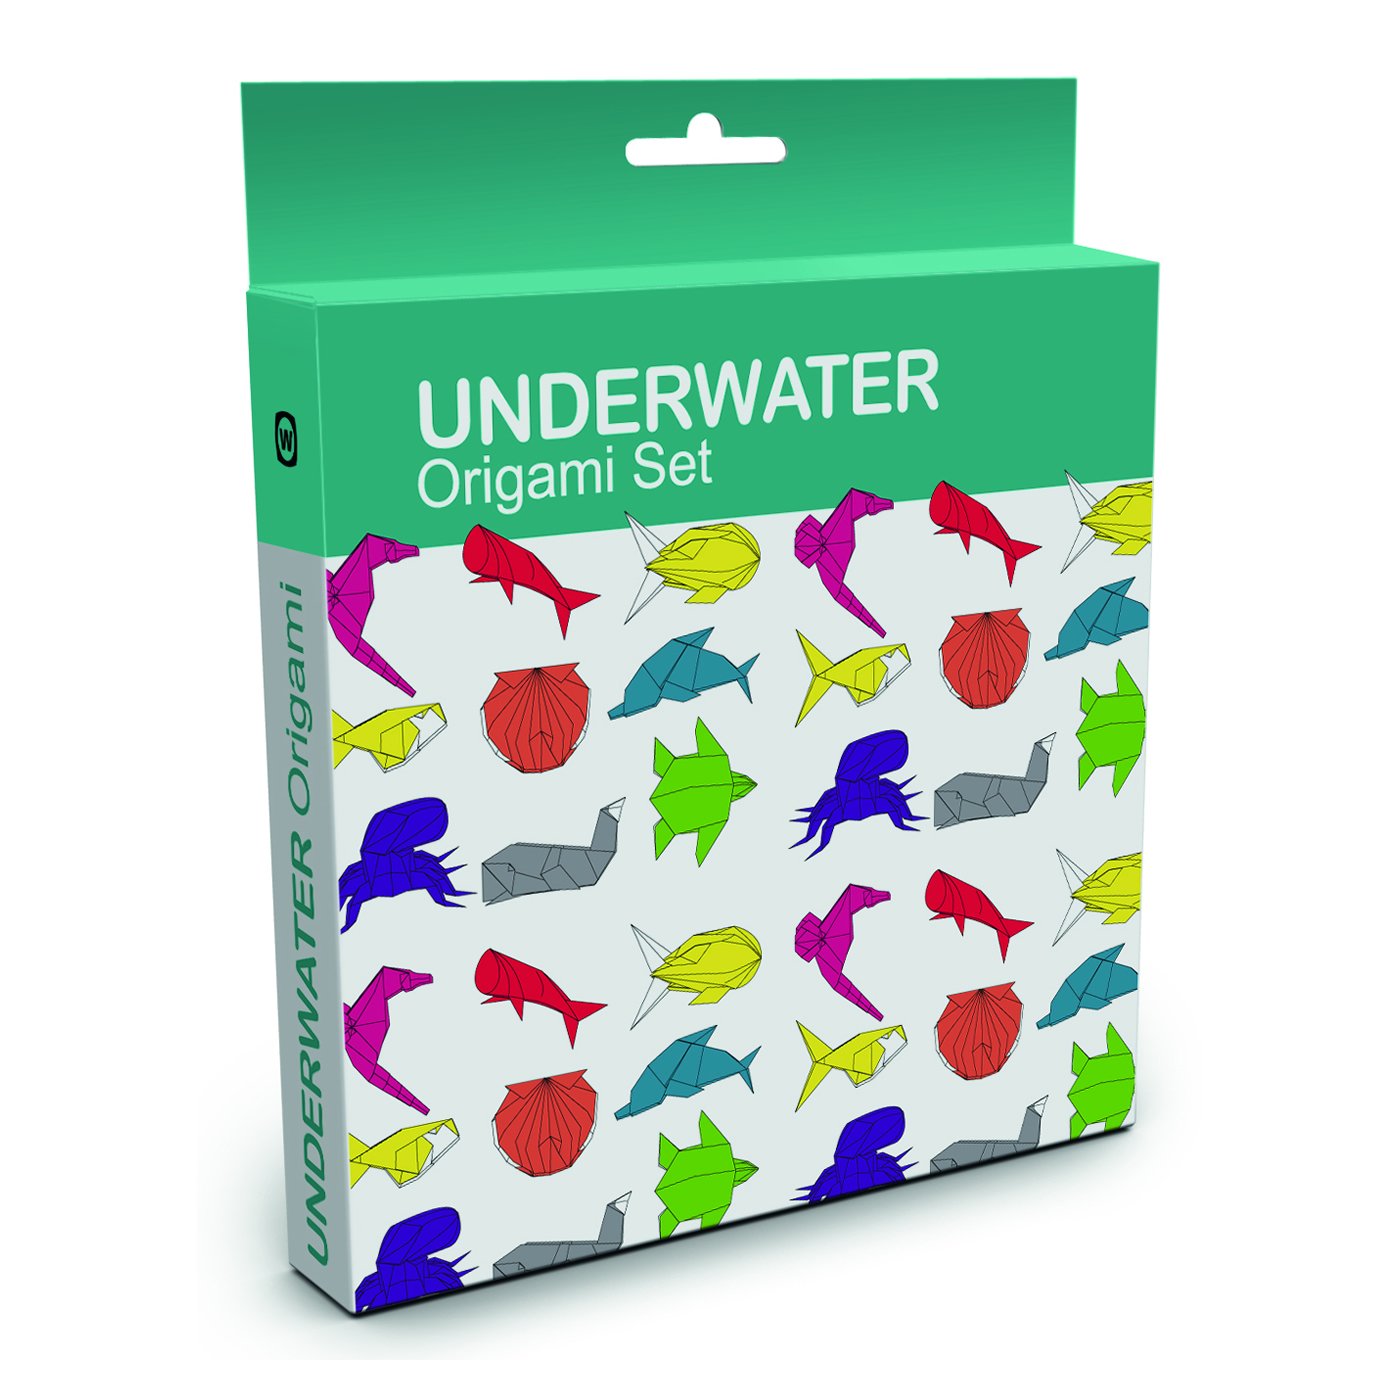 Boxed Origami Set- Underwater Origami